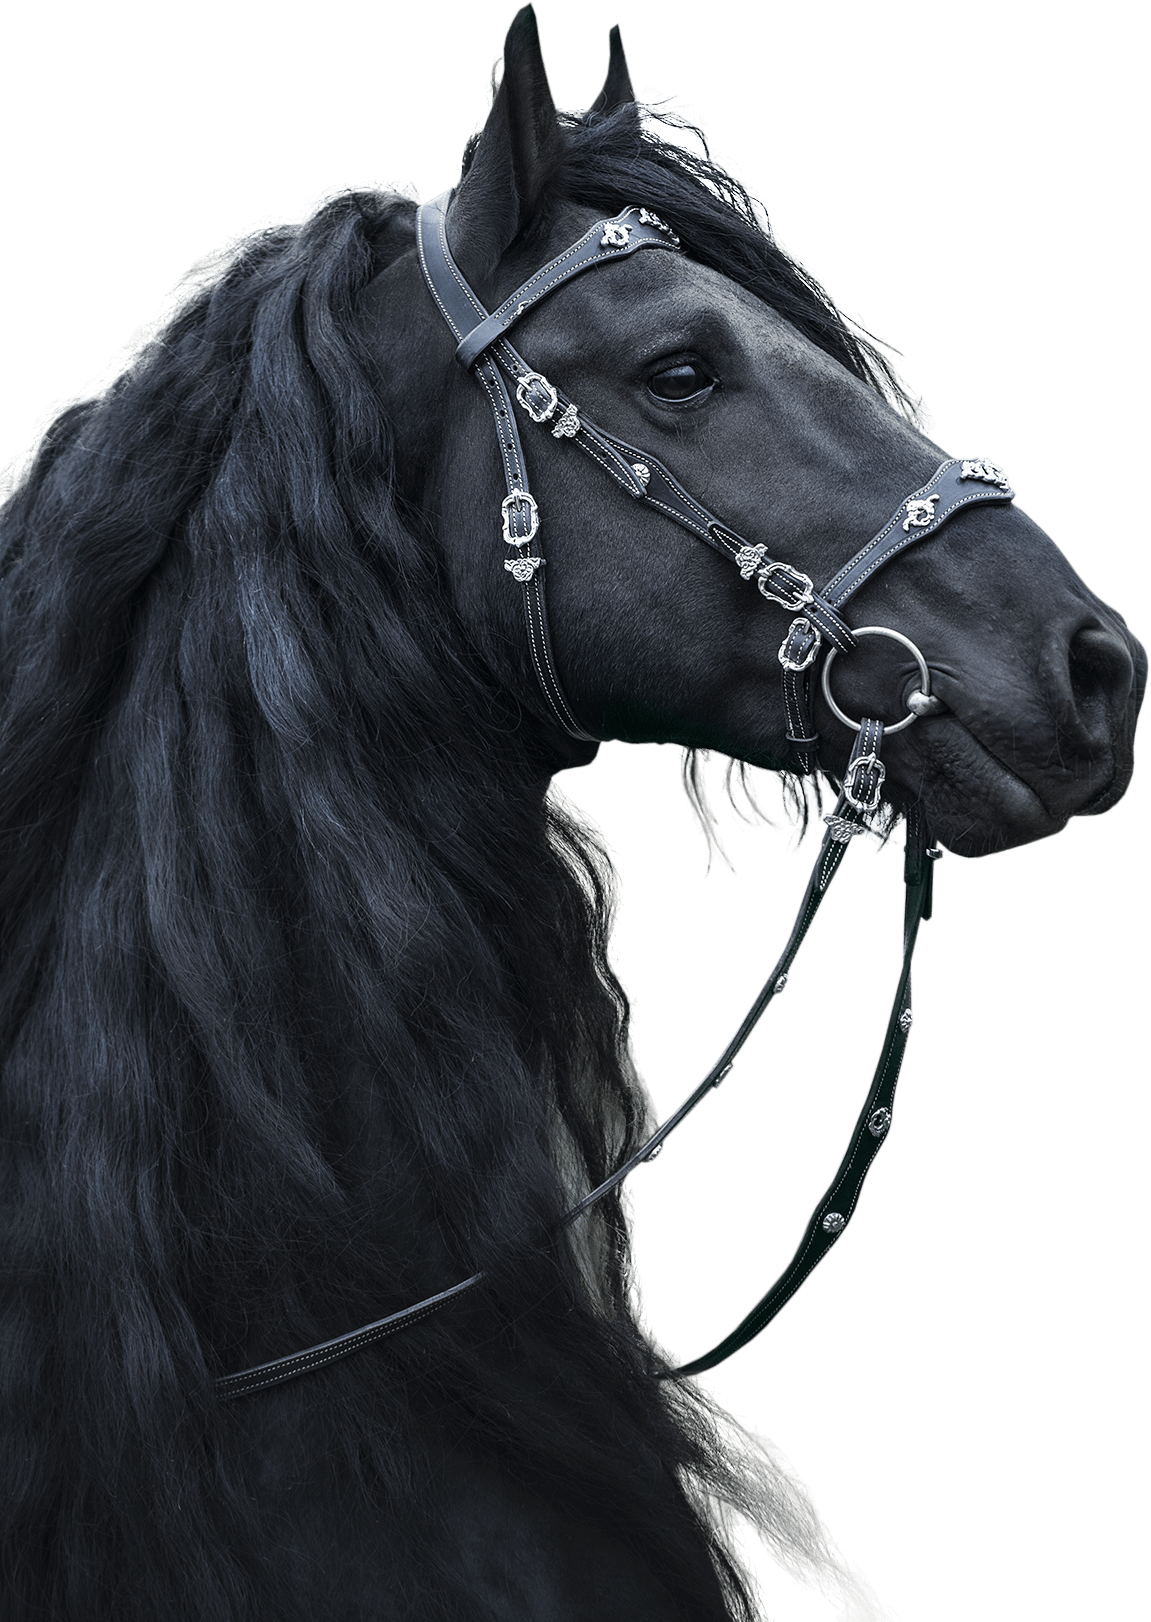 Лошади вытянувшие черные головы и согнувшиеся. Андалузская лошадь Эстетика. Лошадь черный. Фризская лошадь. Фризская лошадь Эстетика.